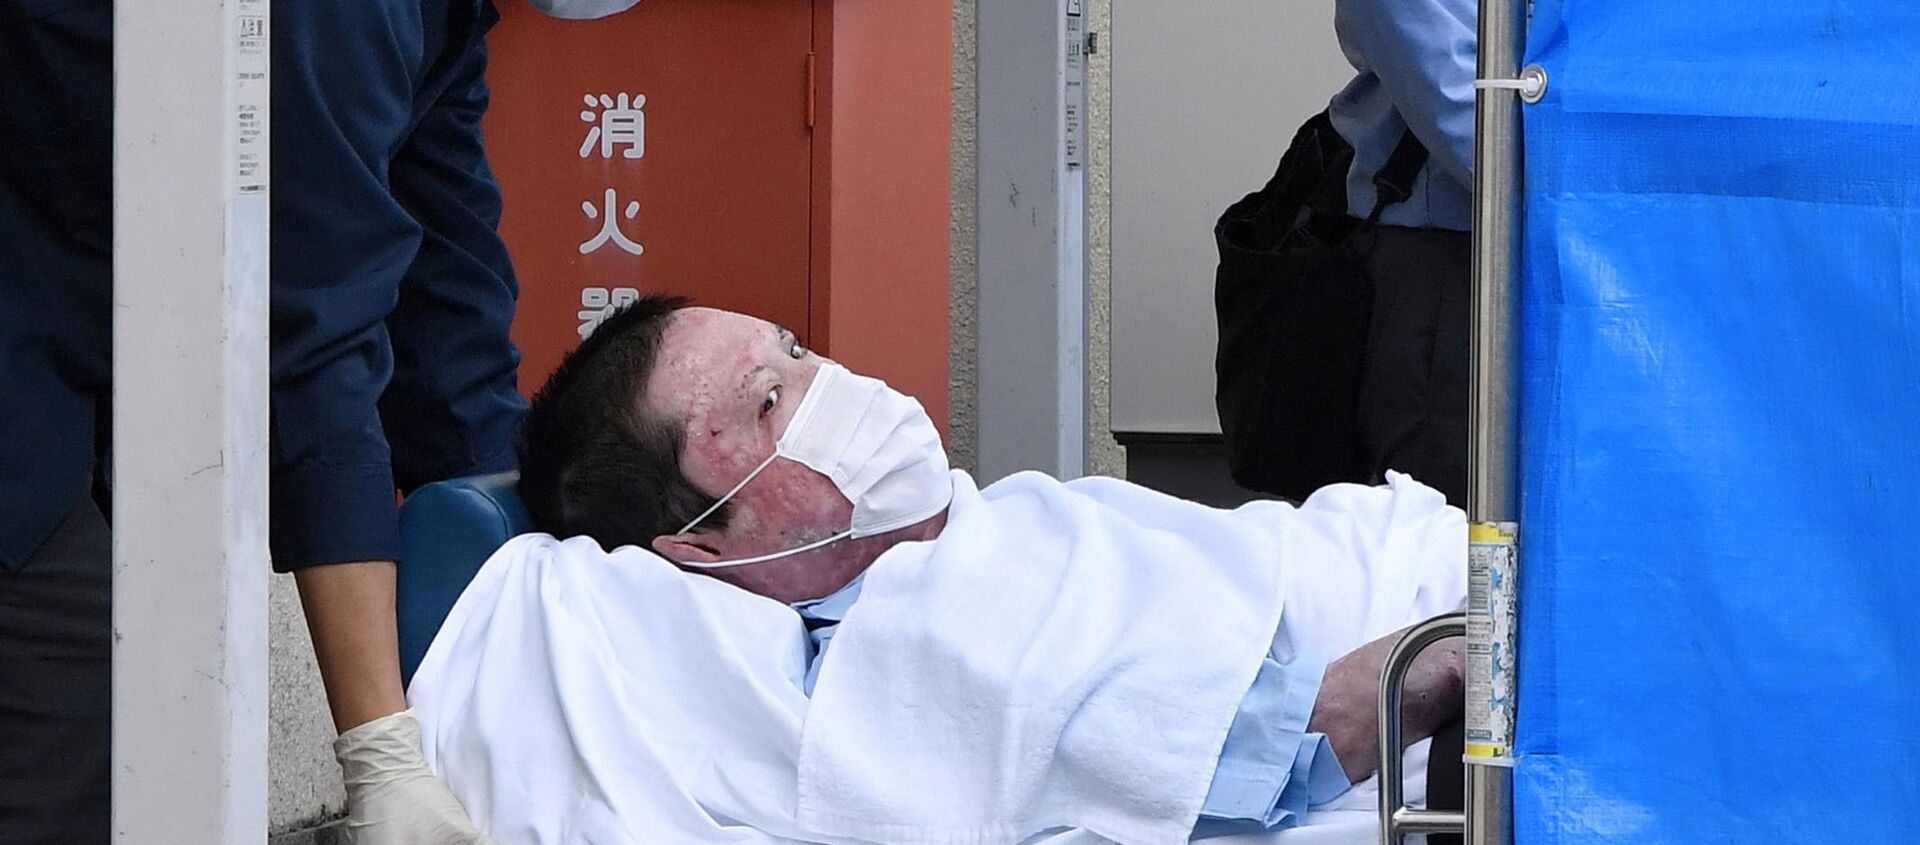 Japonya'nın Kyoto bölgesindeki animasyon stüdyosunda geçen yıl kundaklama sonucu çıkan ve 36 kişinin ölümüyle sonuçlanan yangından sorumlu tutulan Shinji Aoba, gördüğü yanık tedavisinin ardından yeterince iyileştiğine hükmedilmesiyle birlikte aylar sonra tutuklandı. - Sputnik Türkiye, 1920, 27.05.2020